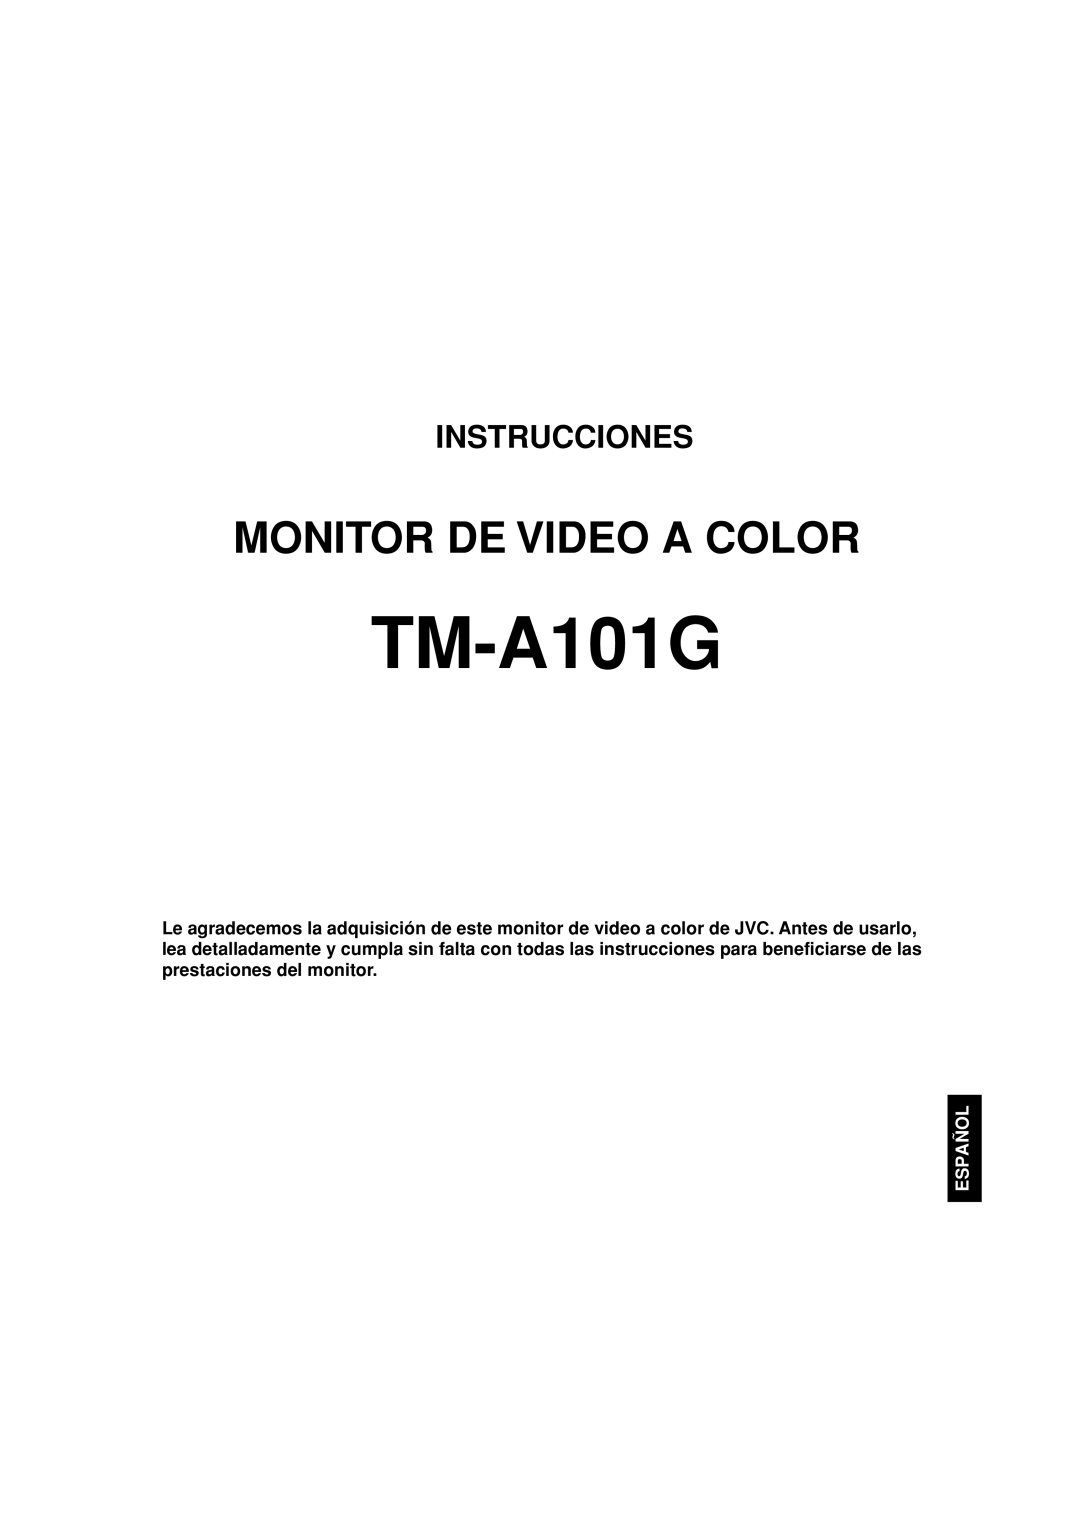 JVC TM-A101G manual Monitor De Video A Color, Instrucciones, Español 